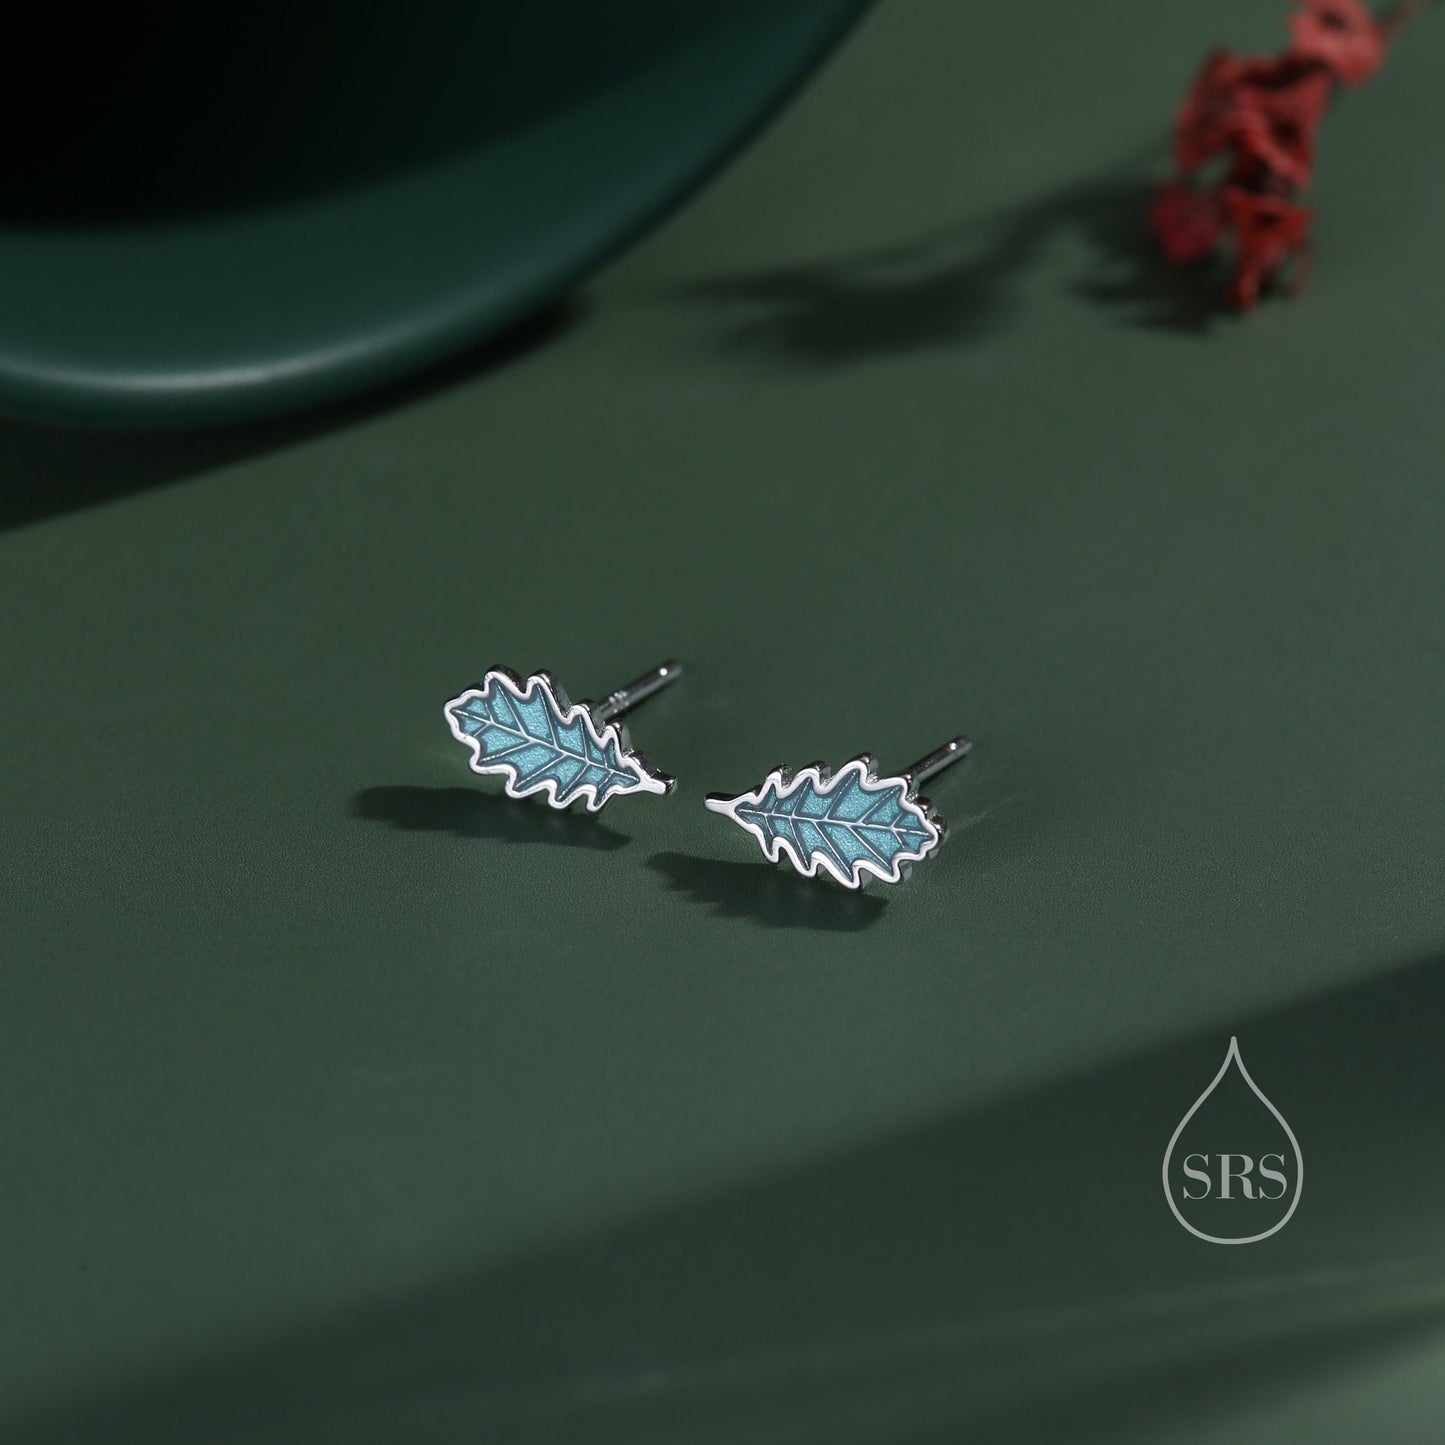 Enamel Oak Leaf Stud Earrings in Sterling Silver, Petite Acorn Leaf Earrings, Small Leaf Stud, Nature Inspired